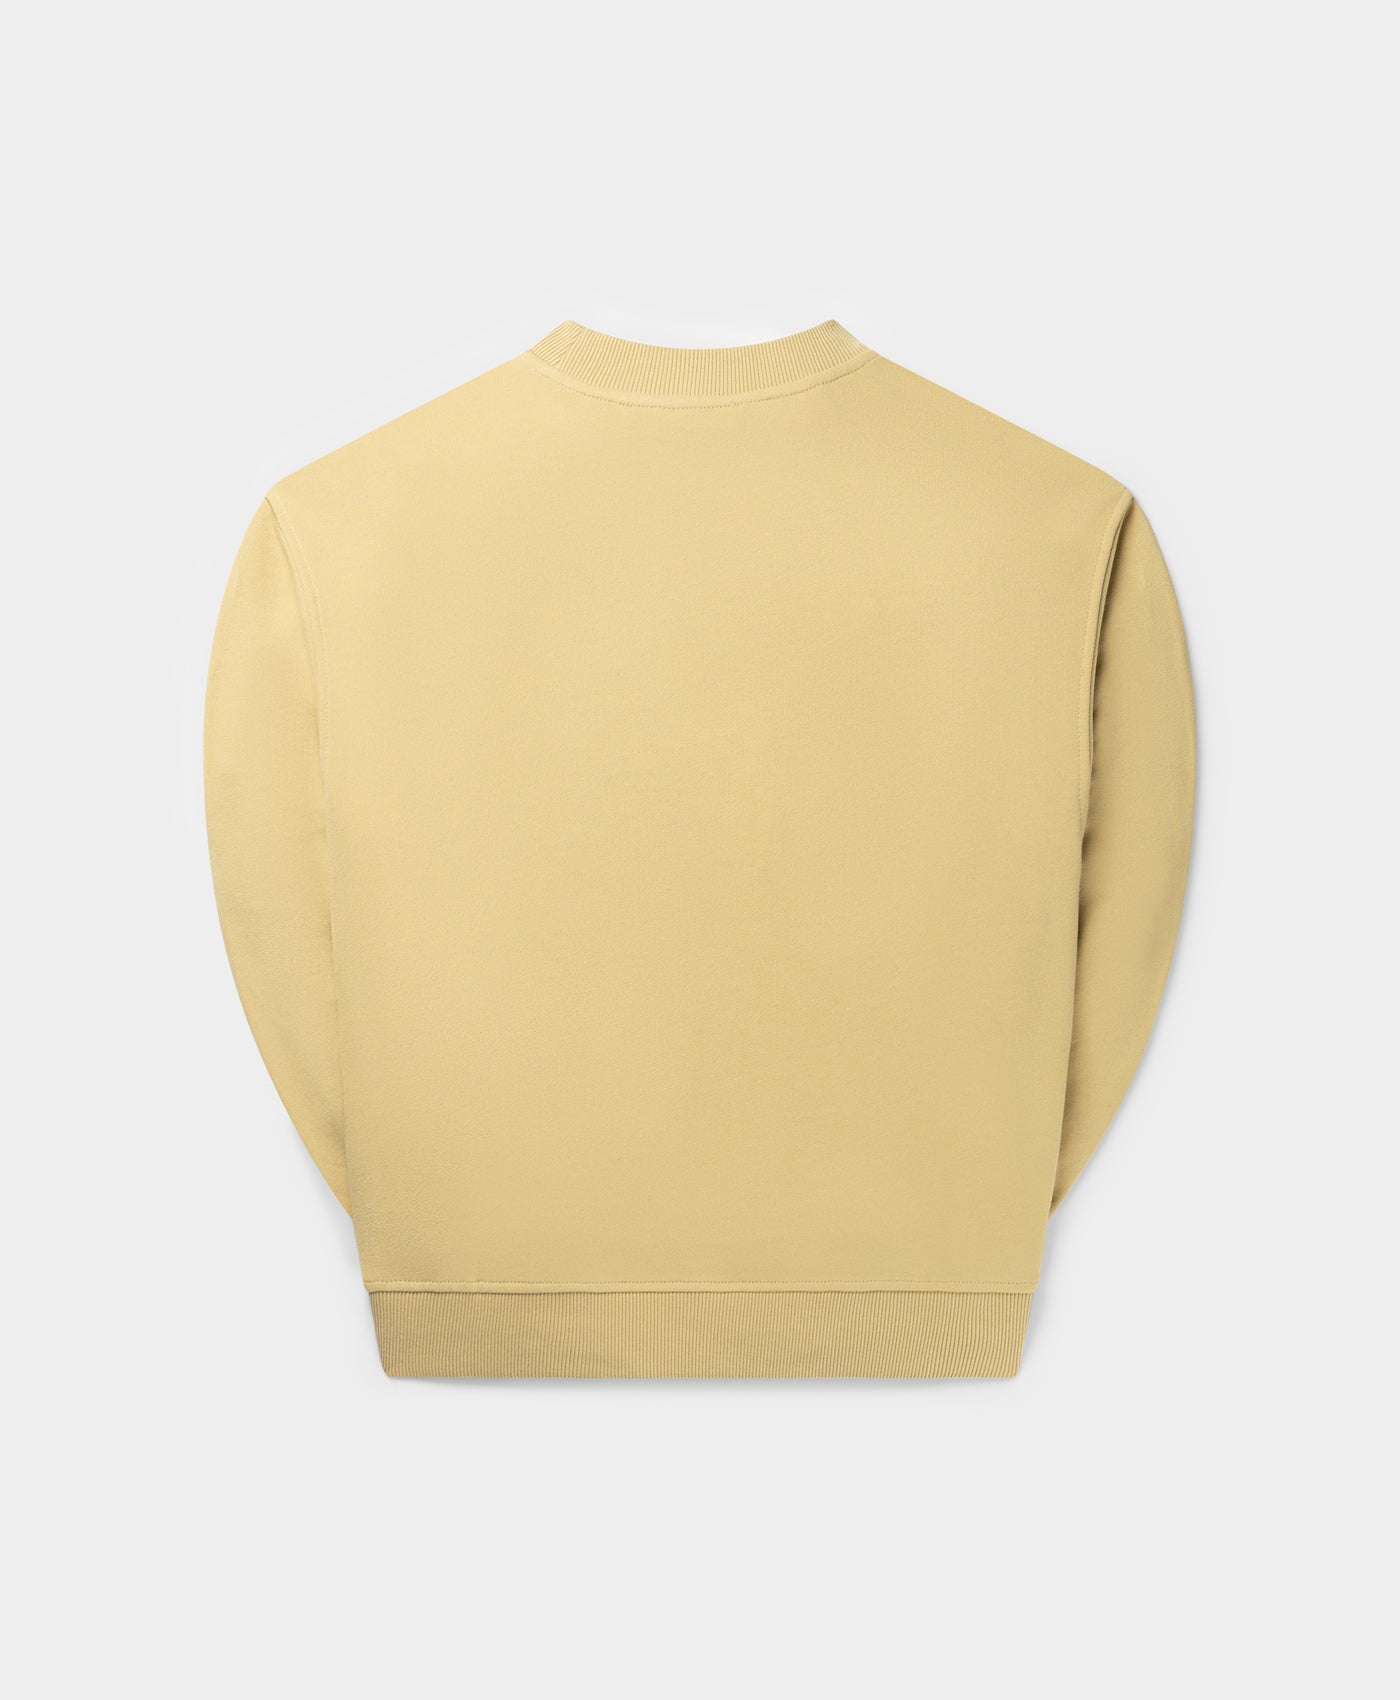 DP - Taos Beige Diverse Logo Boxy Sweater - Packshot - Rear